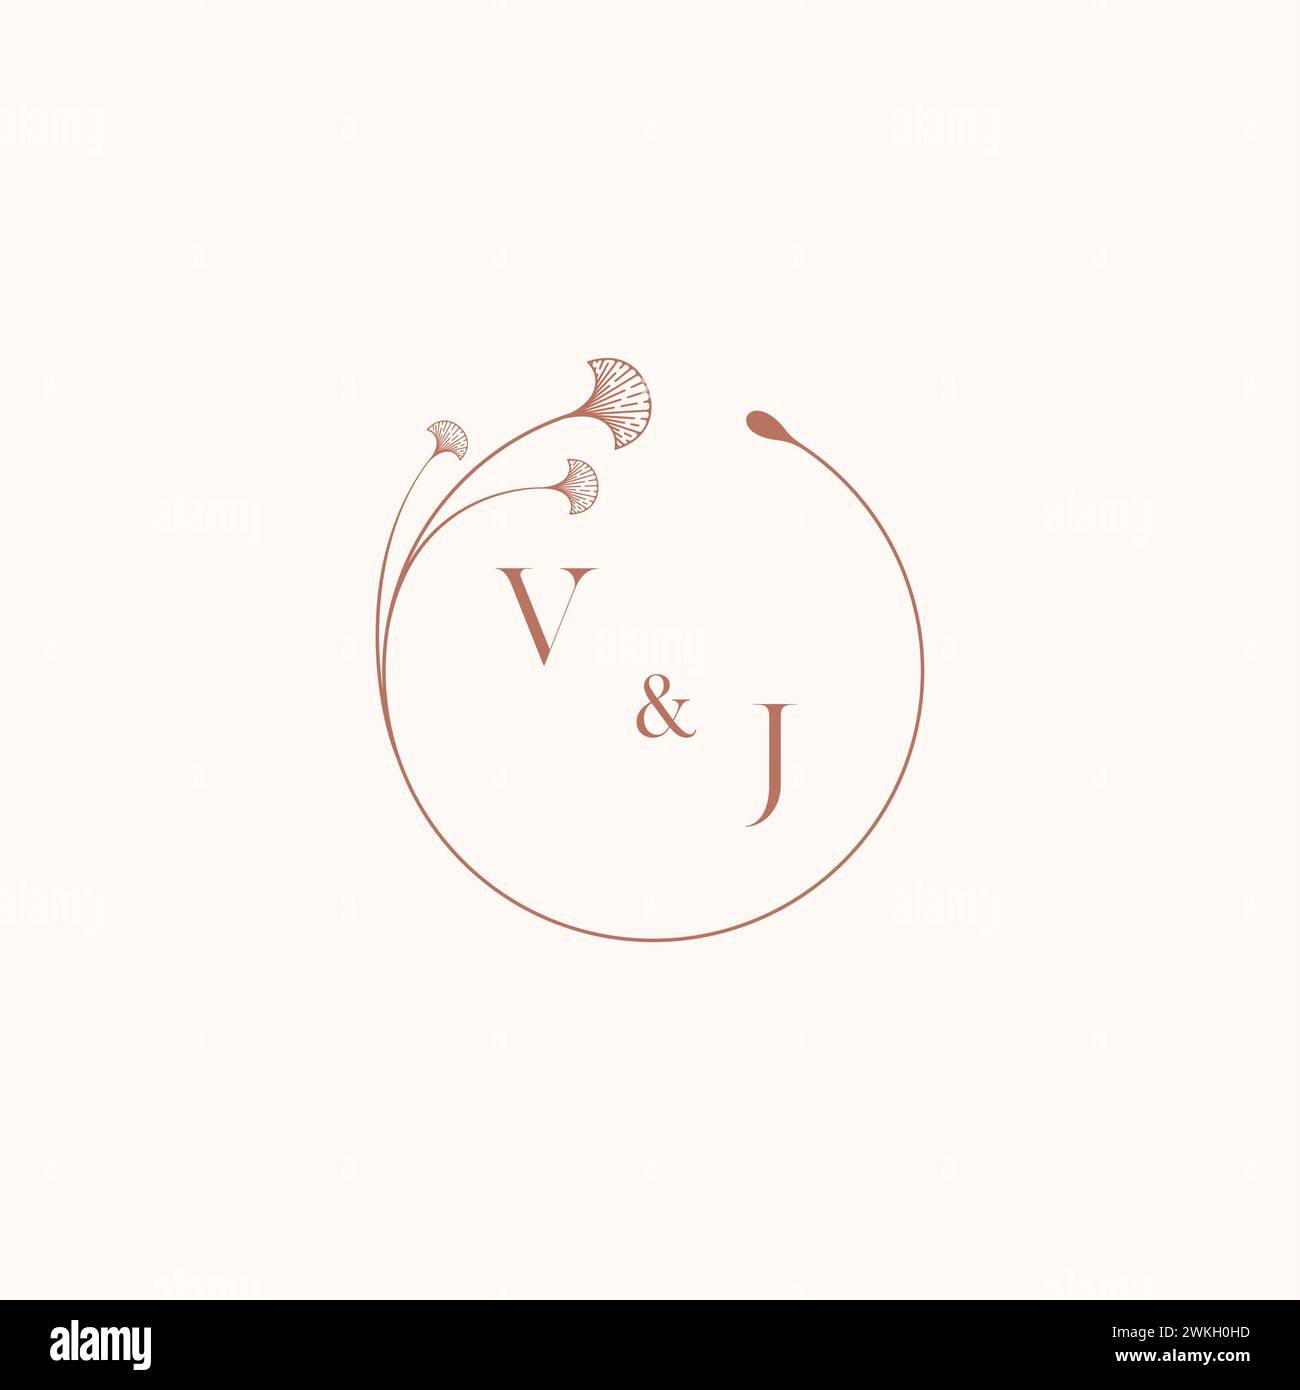 VJ wedding monogram logo designideas as inspiration Stock Vector